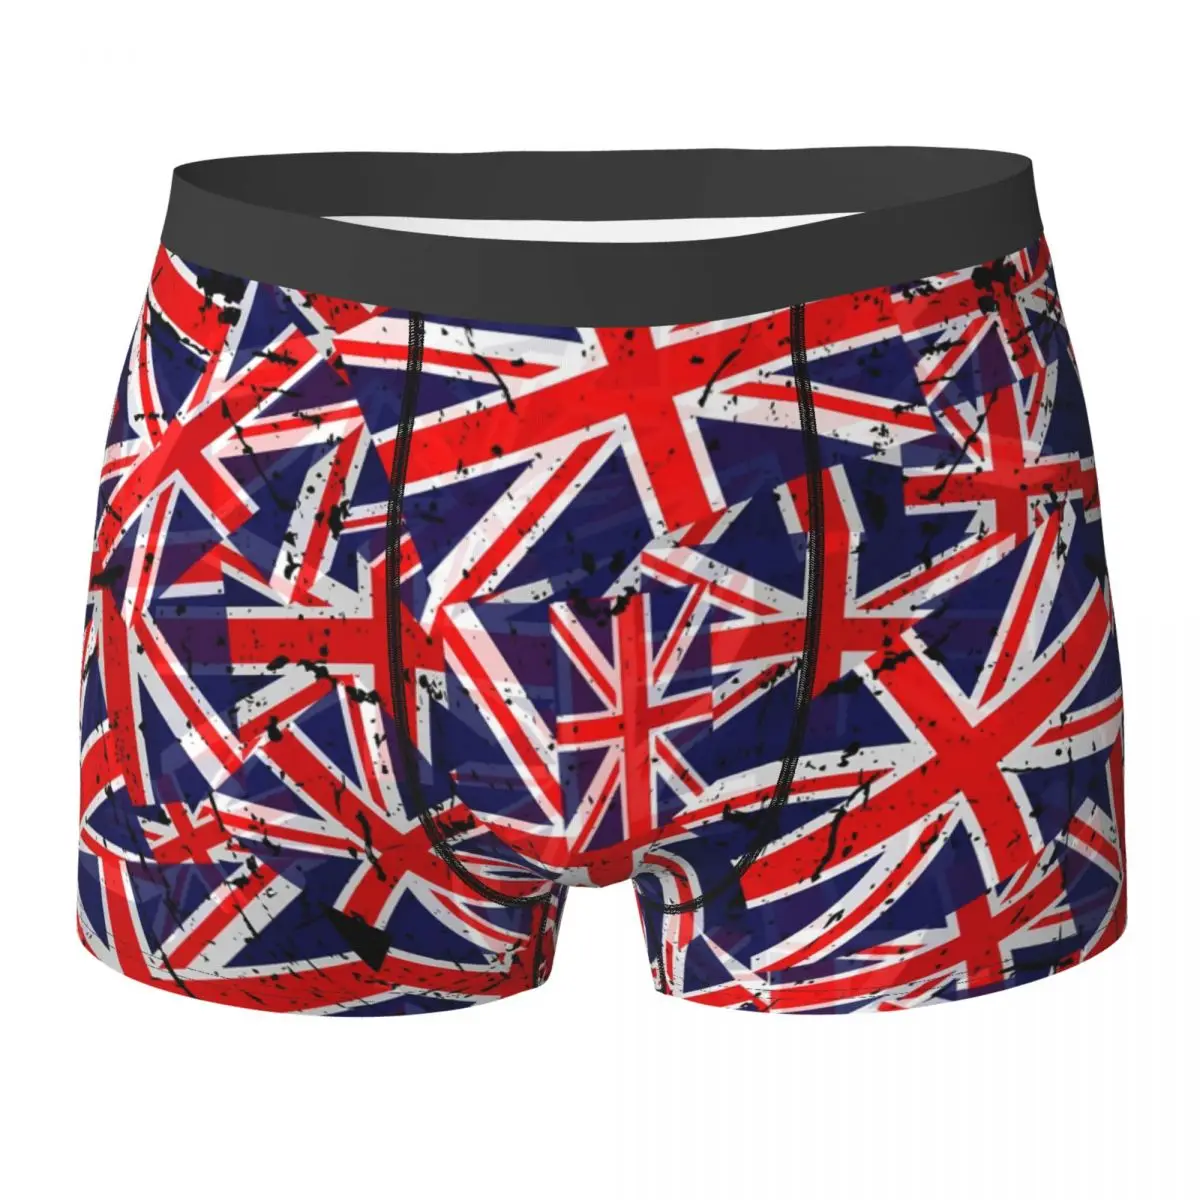 

Нижнее белье с британским флагом, высококачественные шорты-боксеры с объемным мешочком и флагом Союза, дышащие мужские трусы большого размера